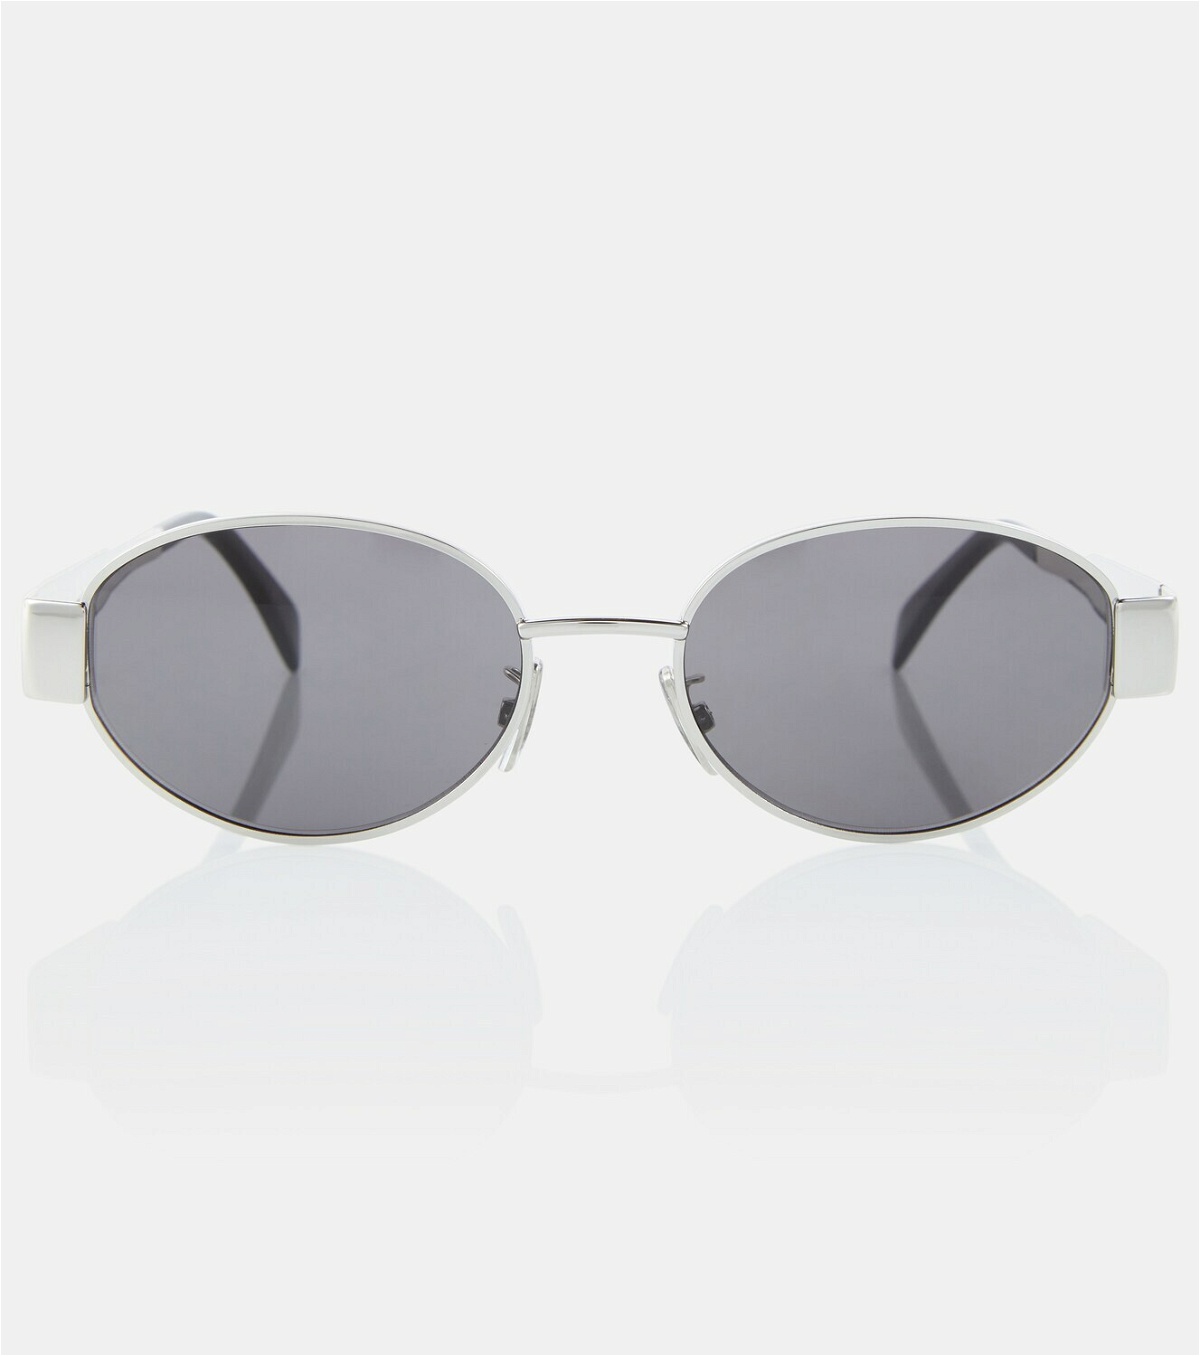 Celine Eyewear Triomphe oval metal sunglasses Celine